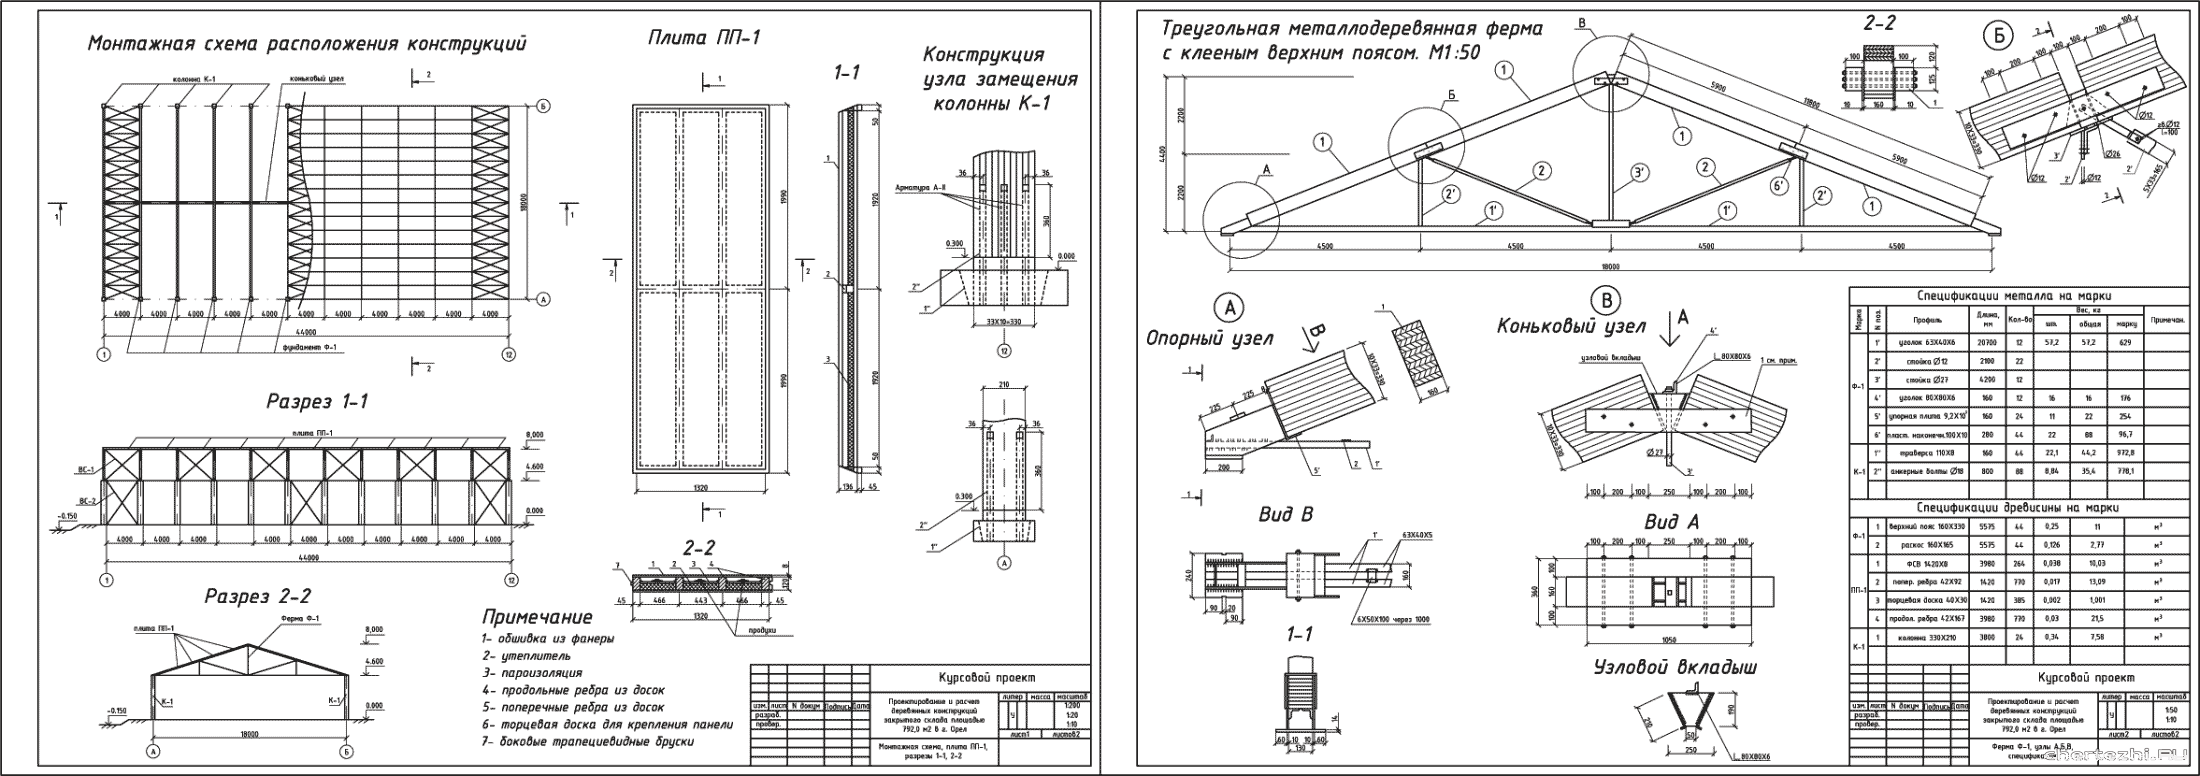 Курсовая работа - Проектирование и расчет  деревянных конструкций  закрытого склада площадью  792,0 м2 в г. Орел